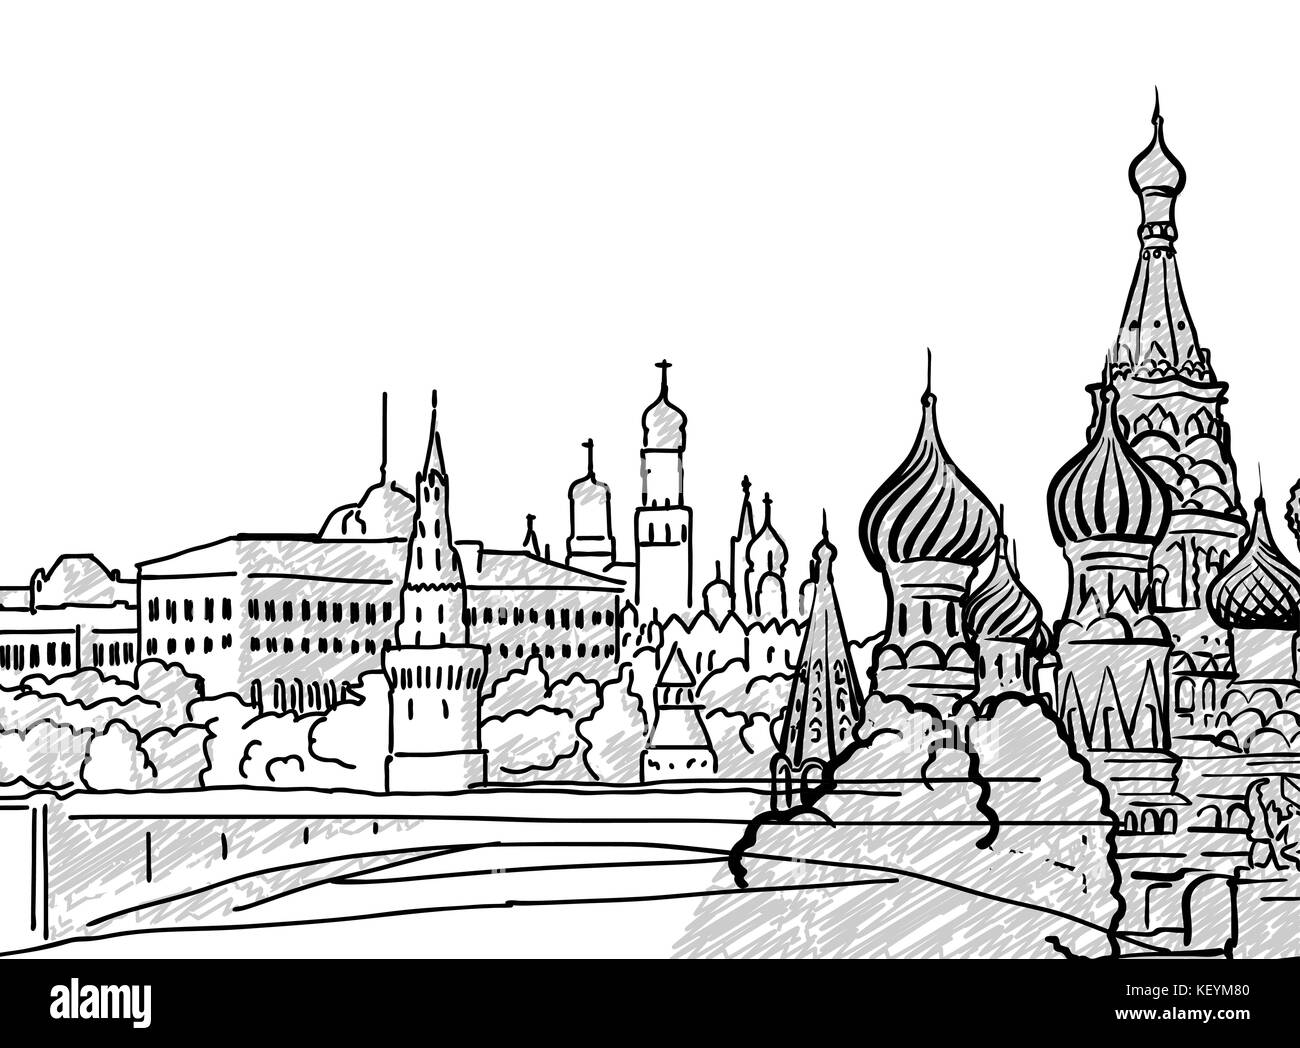 Moskau, Russland berühmten Reisen Skizze. Lineart Zeichnung von Hand. Grußkarte Design, Vektor, Abbildung Stock Vektor